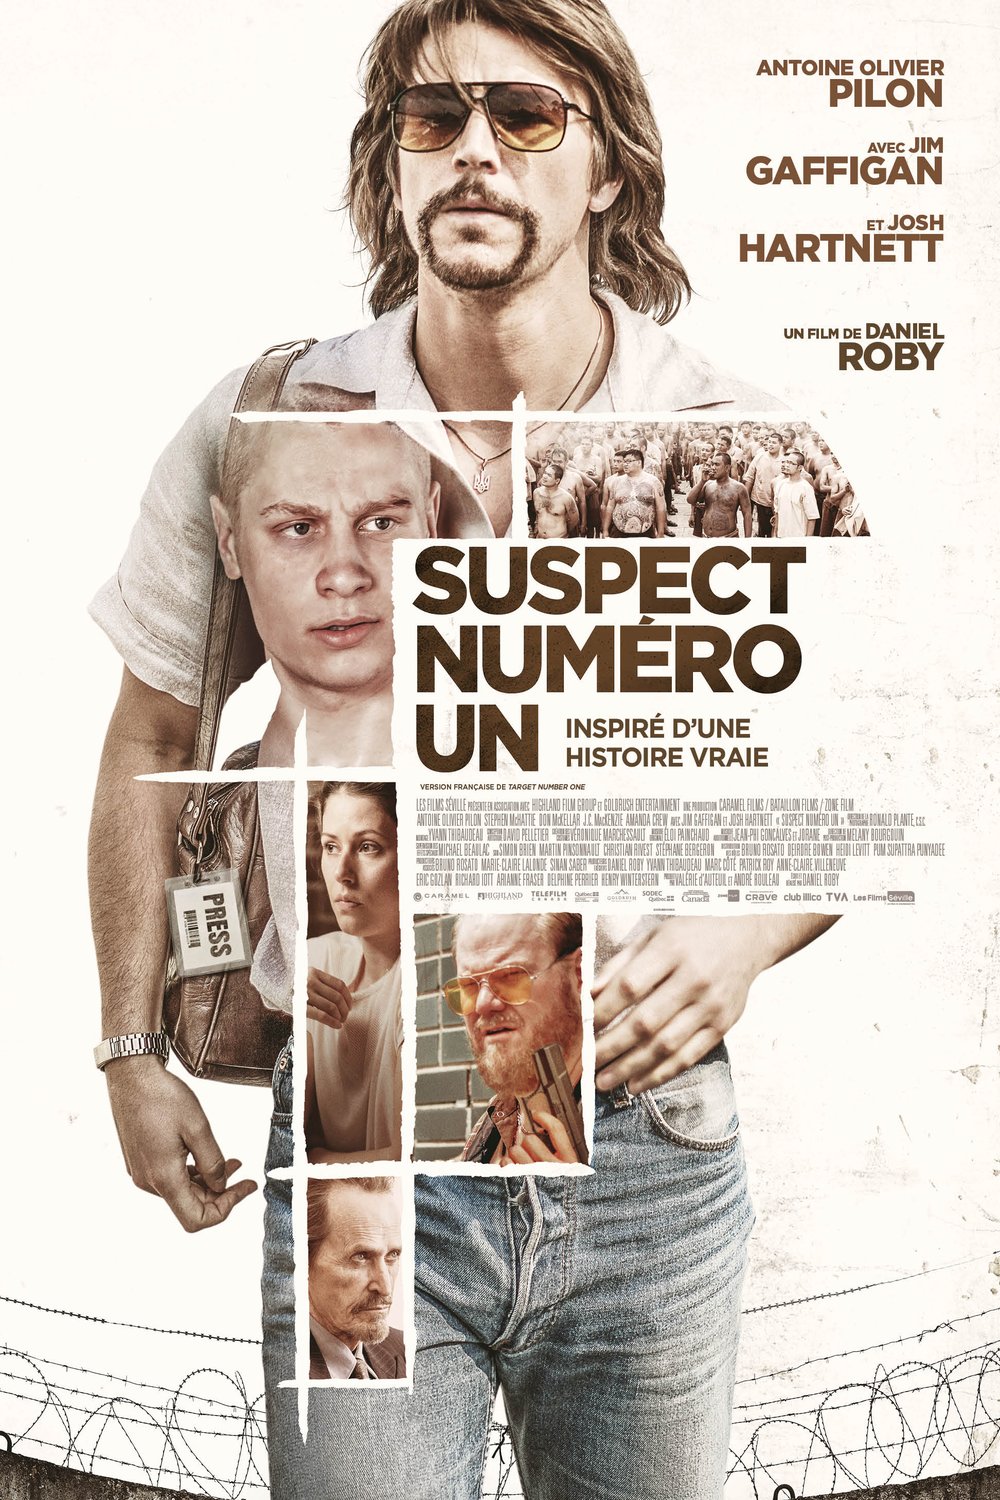 Poster of the movie Suspect numéro un